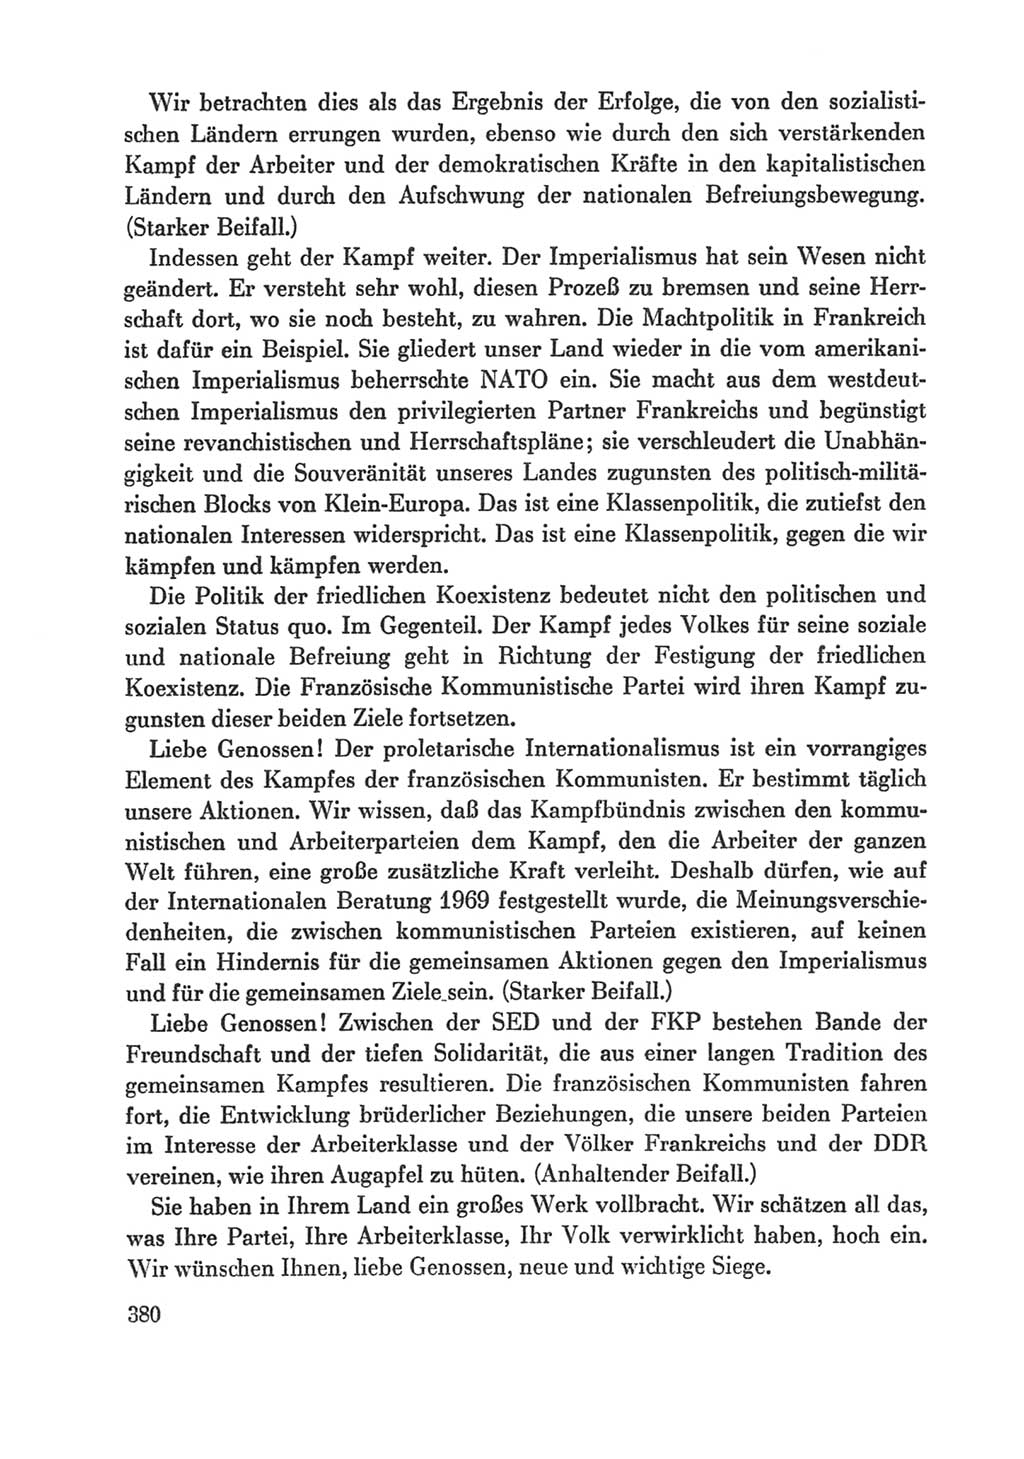 Protokoll der Verhandlungen des Ⅸ. Parteitages der Sozialistischen Einheitspartei Deutschlands (SED) [Deutsche Demokratische Republik (DDR)] 1976, Band 1, Seite 380 (Prot. Verh. Ⅸ. PT SED DDR 1976, Bd. 1, S. 380)